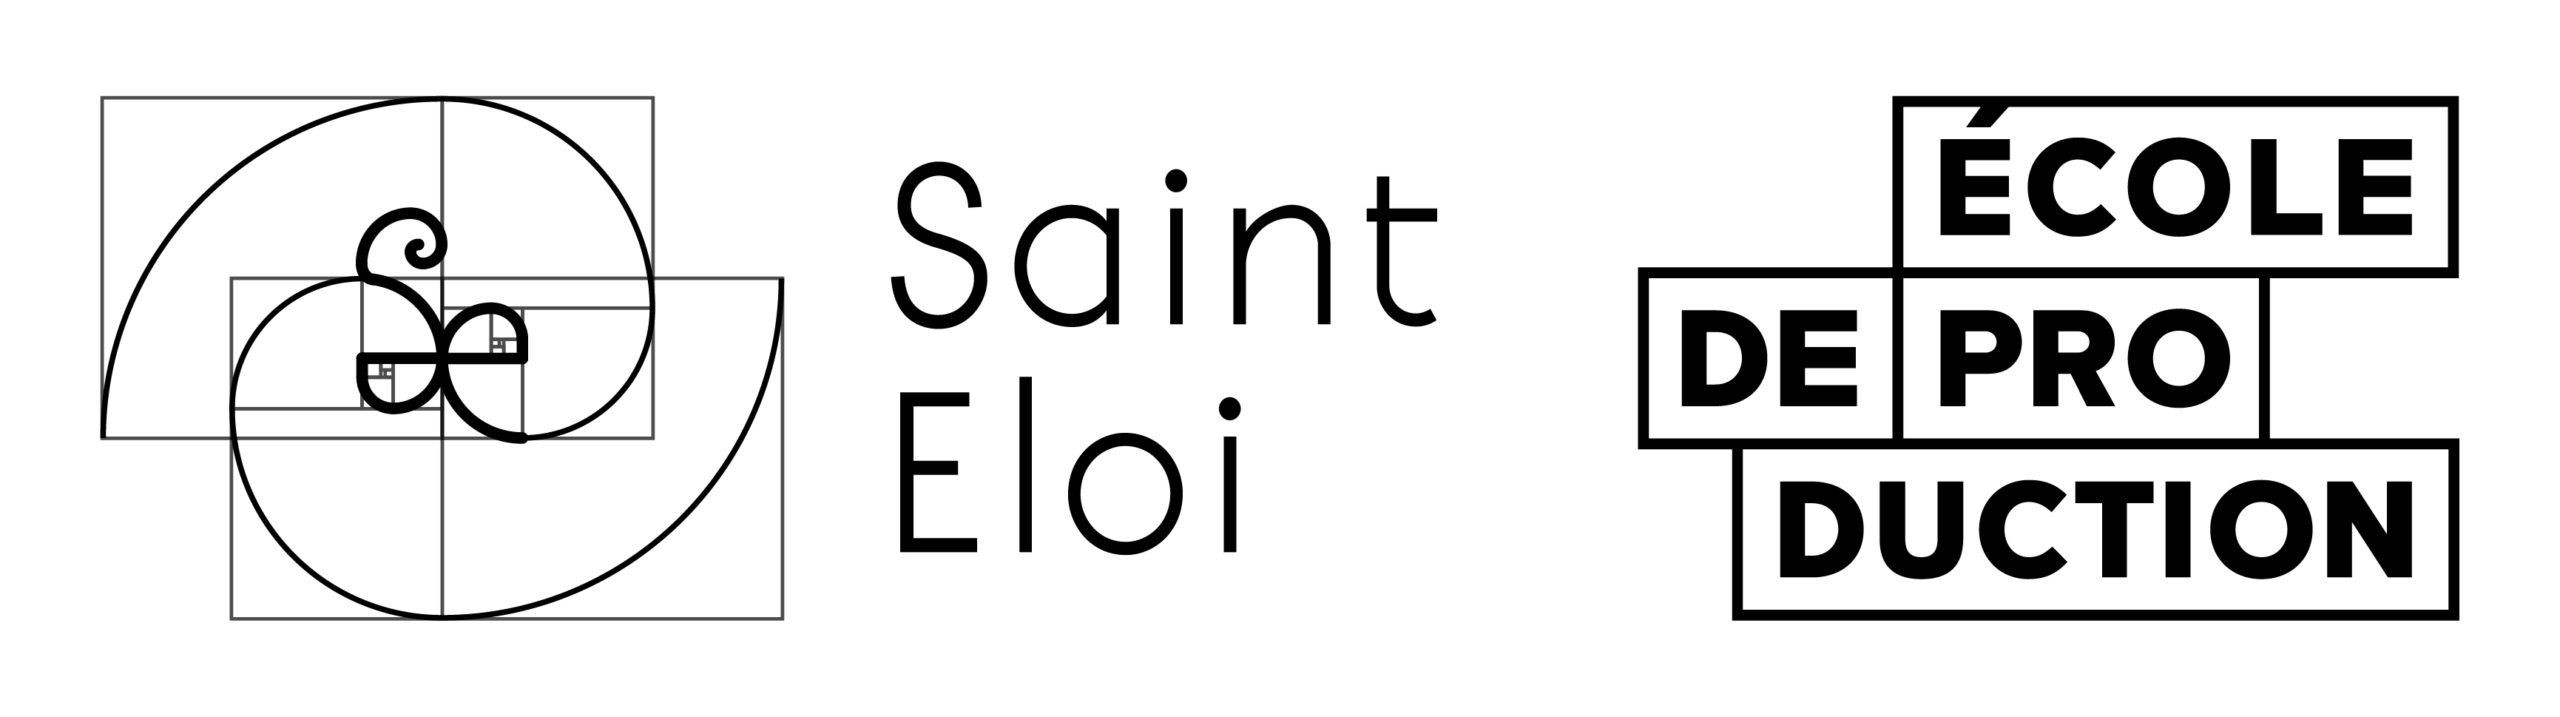 Ecole de Production Saint Eloi